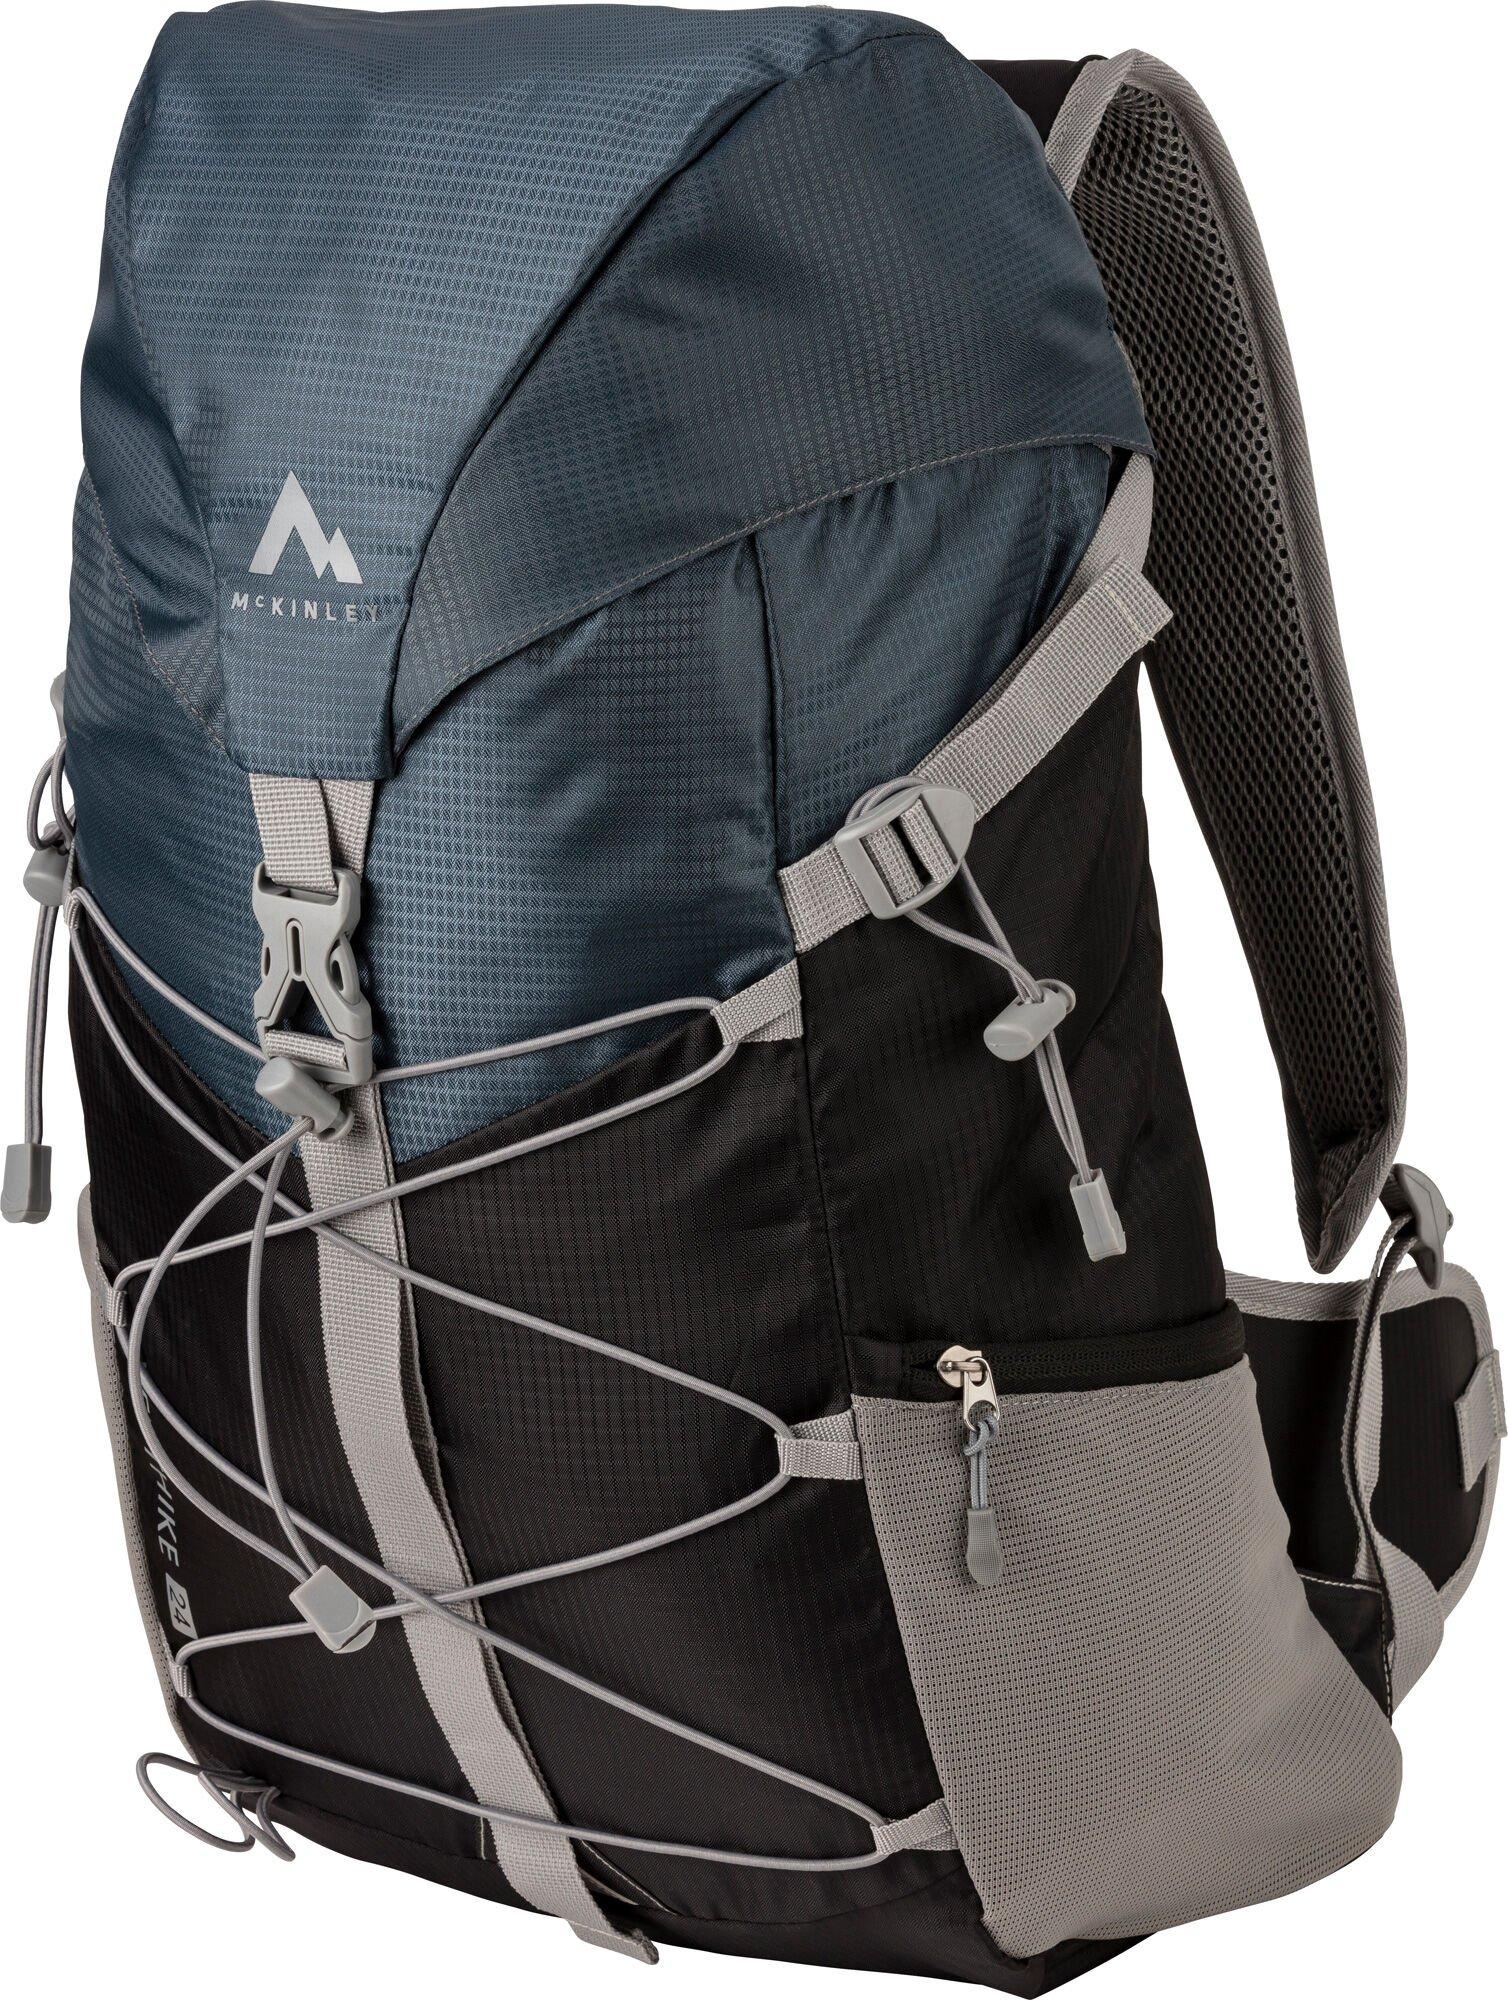 McKinley Venthike 24 VT Hiking Backpack Velikost: Univerzální velikost